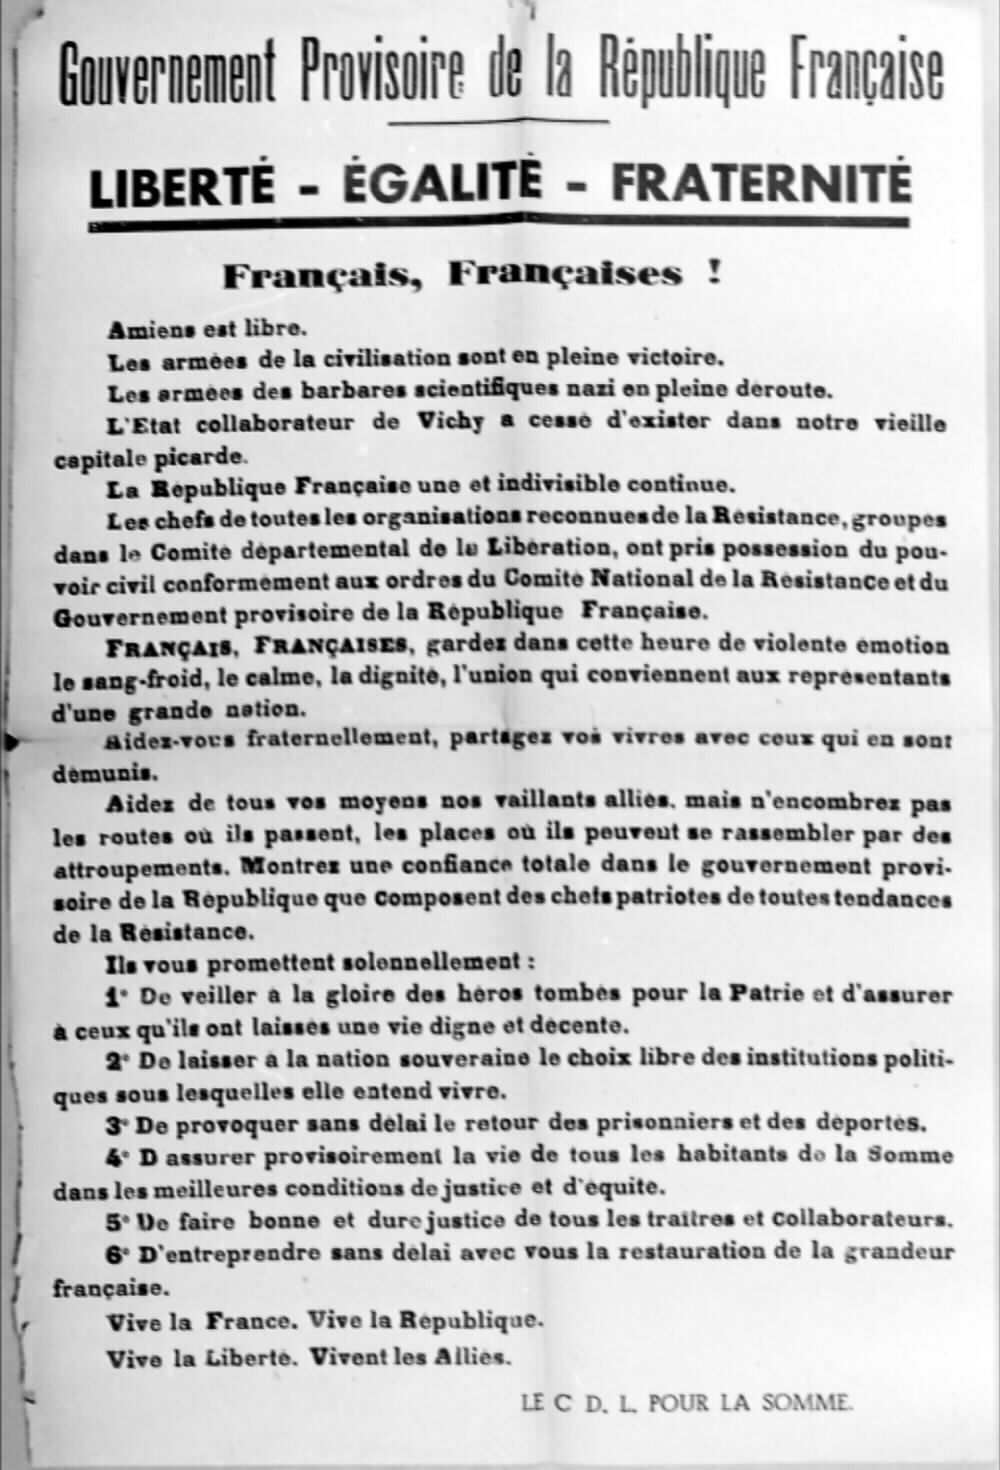 Gouvernement provisoire de la république française - Liberté - Egalité - Fraternité